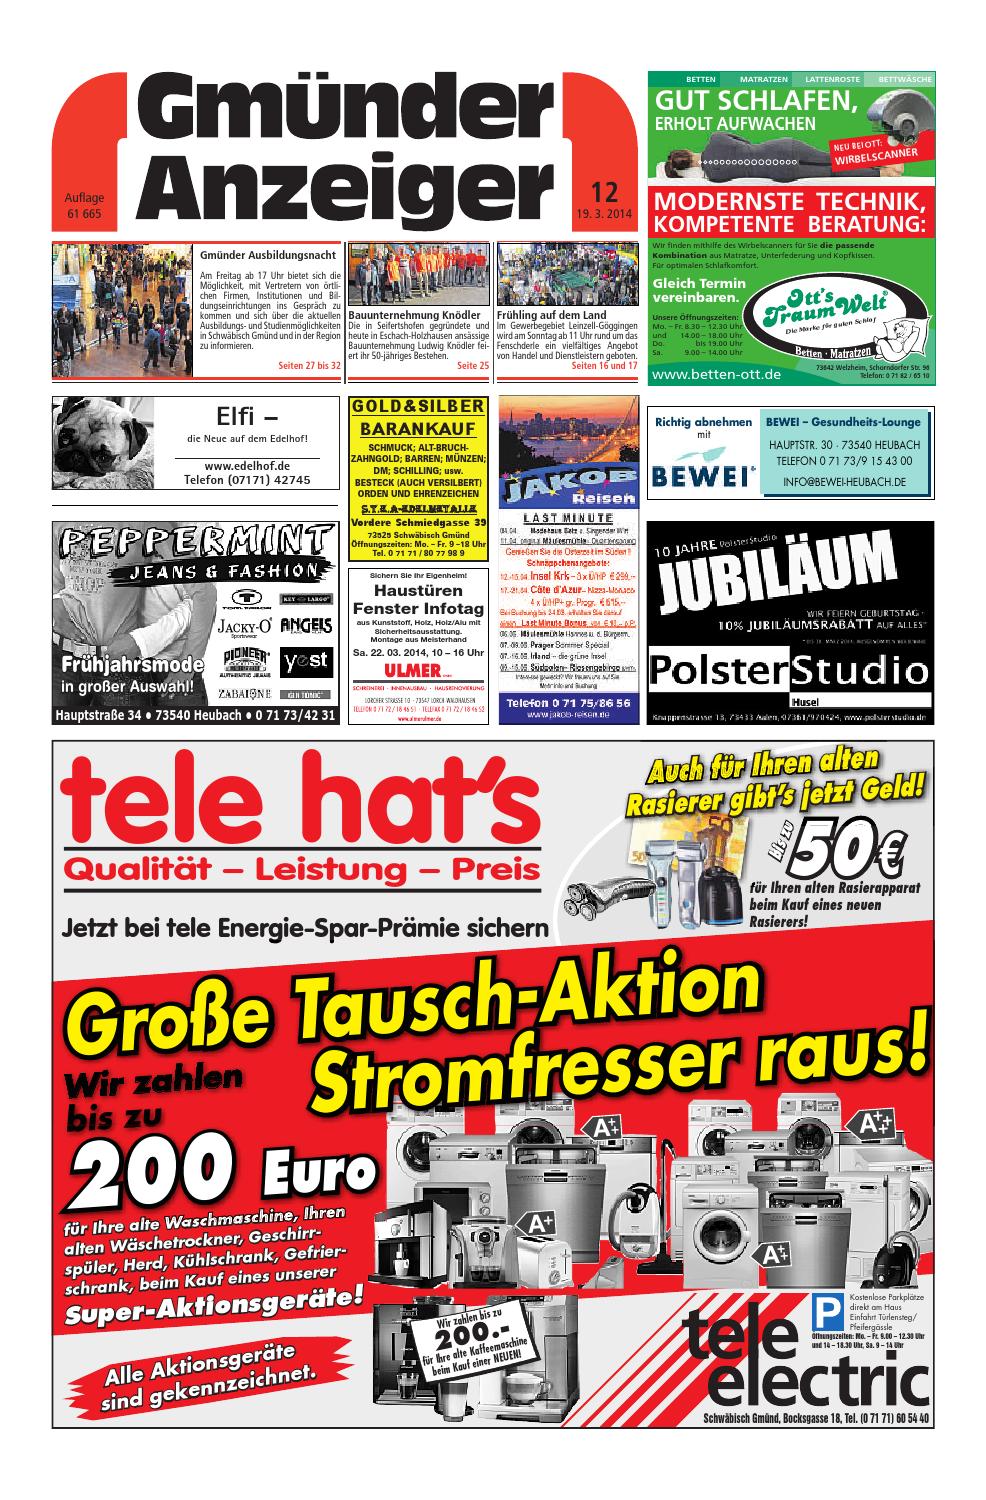 Terrasse Schön Gestalten Genial Der Gmünder Anzeiger Kw 12 by Media Service Ostalb Gmbh